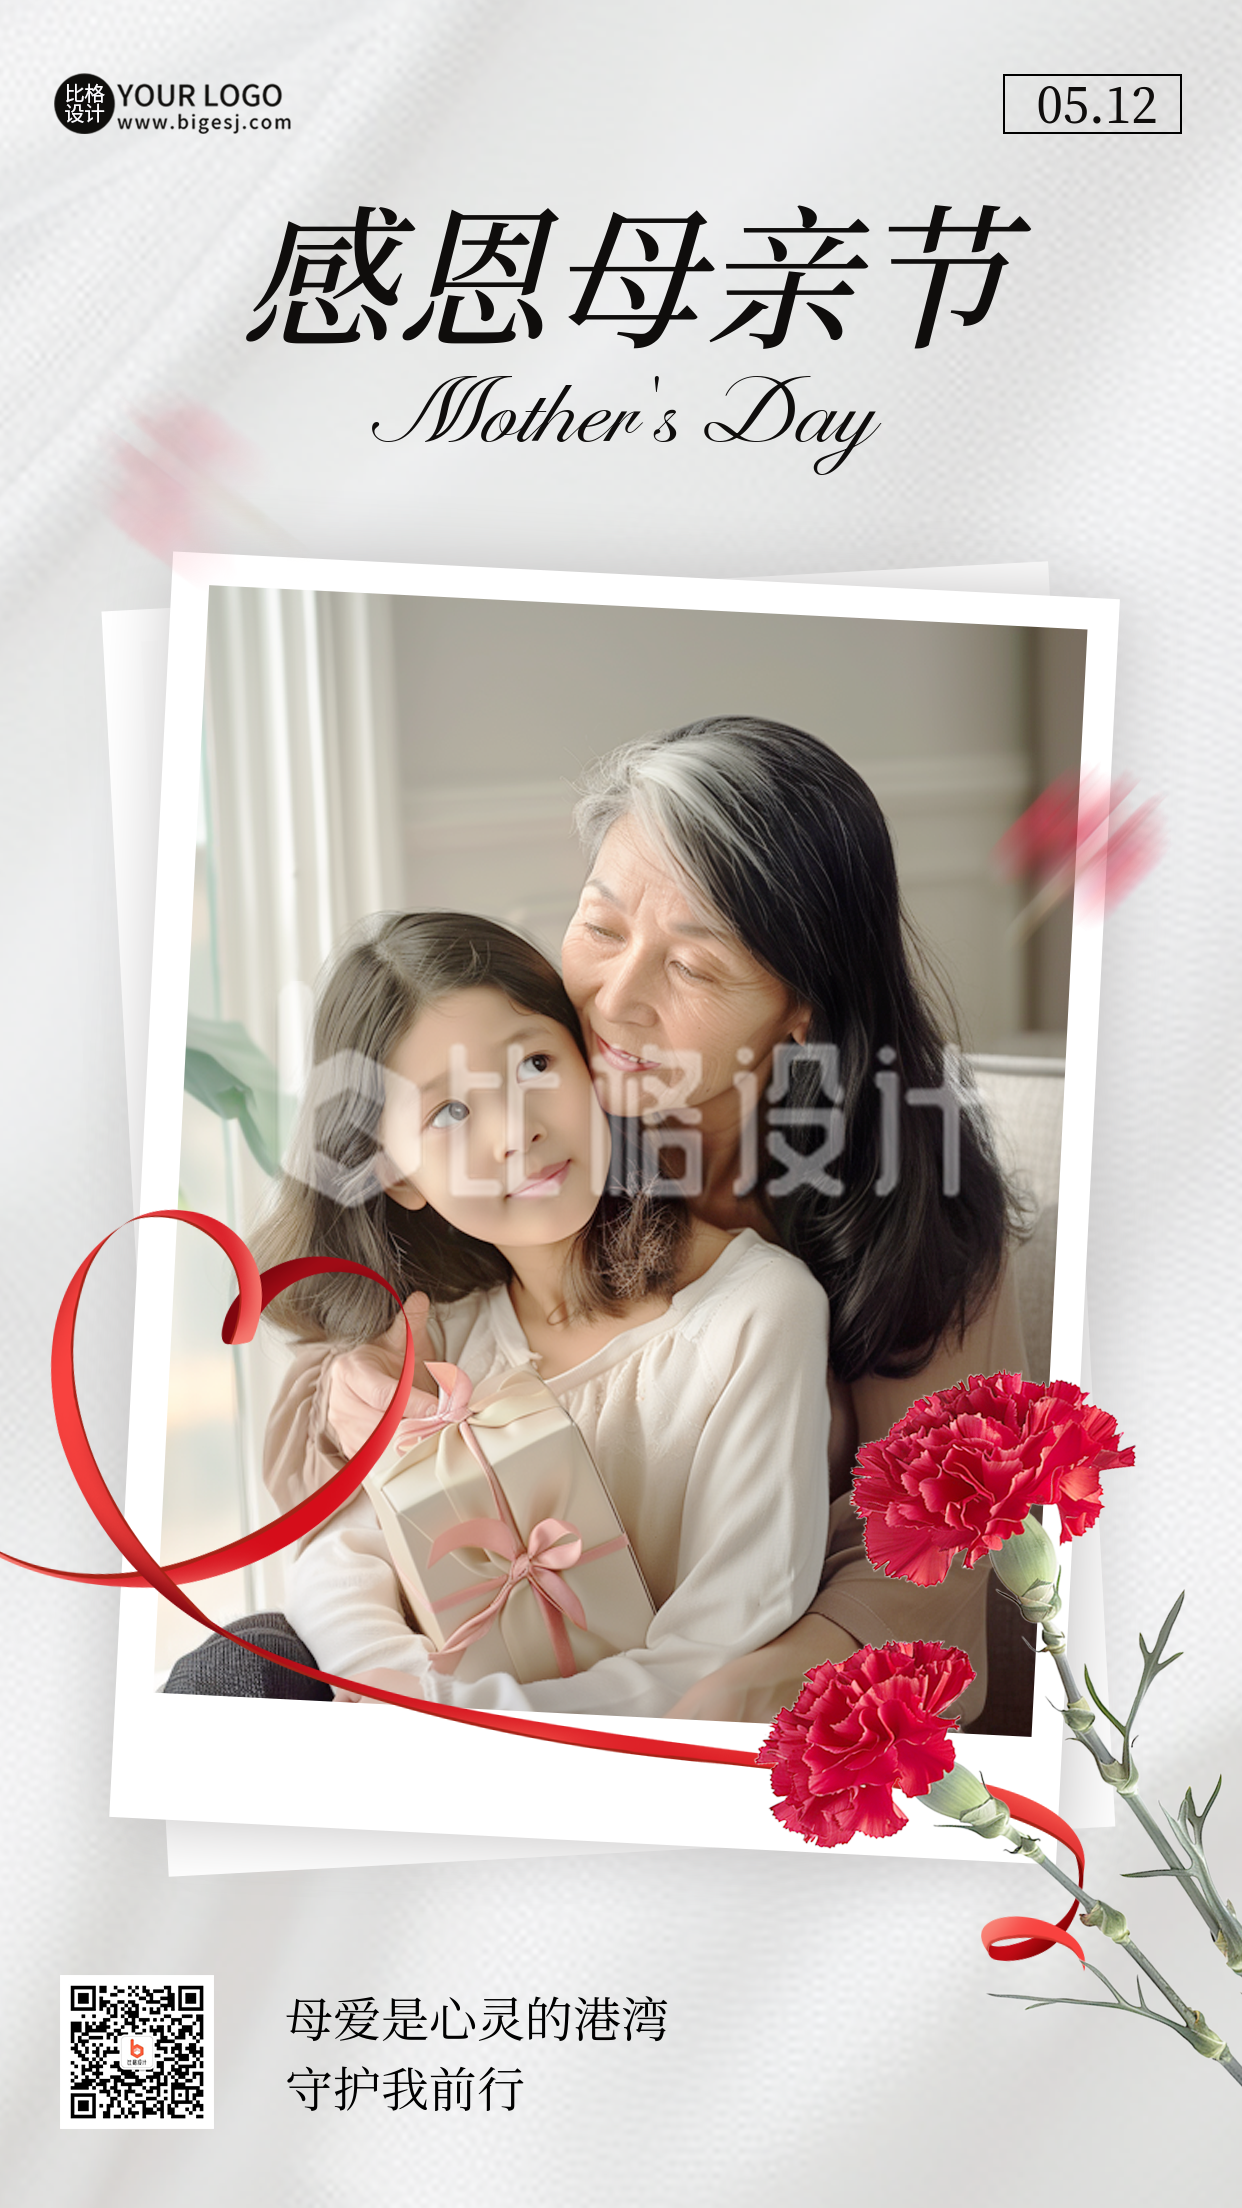 母亲节祝福实景照片宣传海报